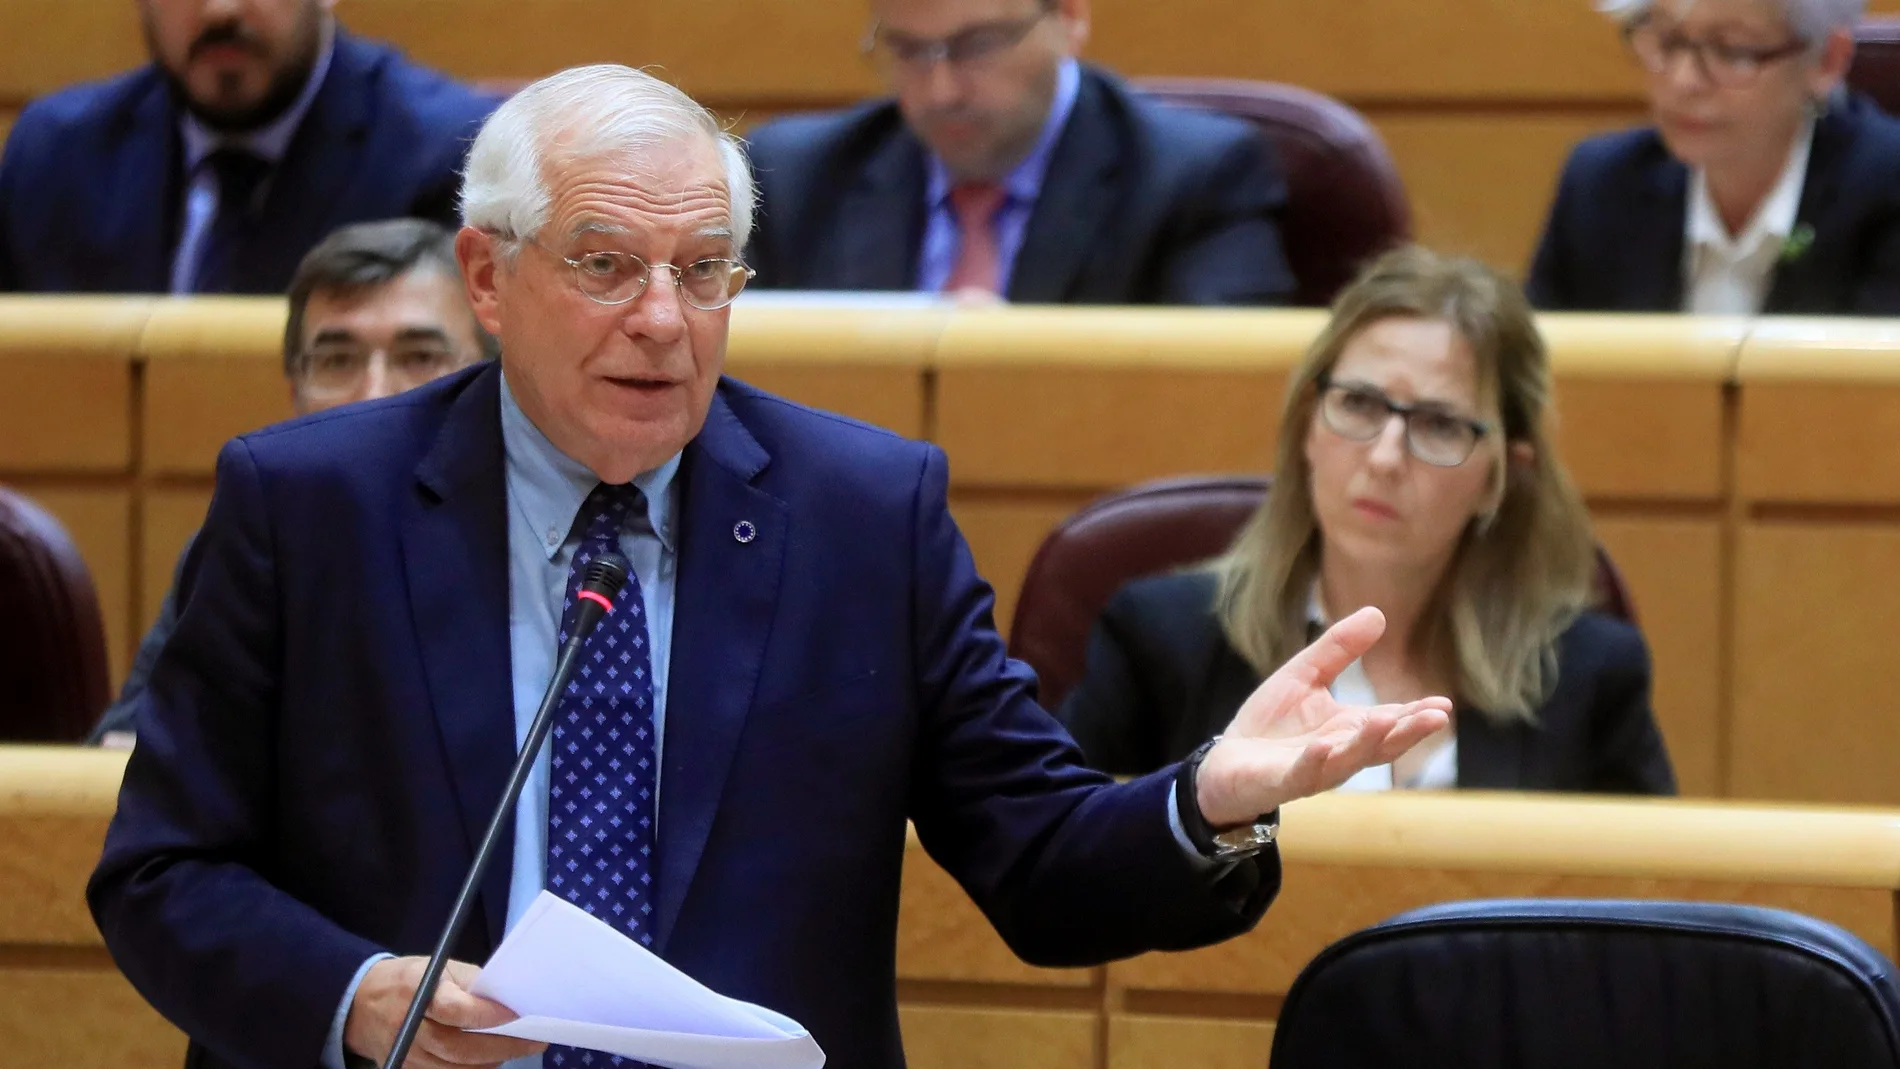  El ministro de Asuntos Exteriores, Josep Borrell, interviene durante la sesión de control al Gobierno en el Pleno del Senado